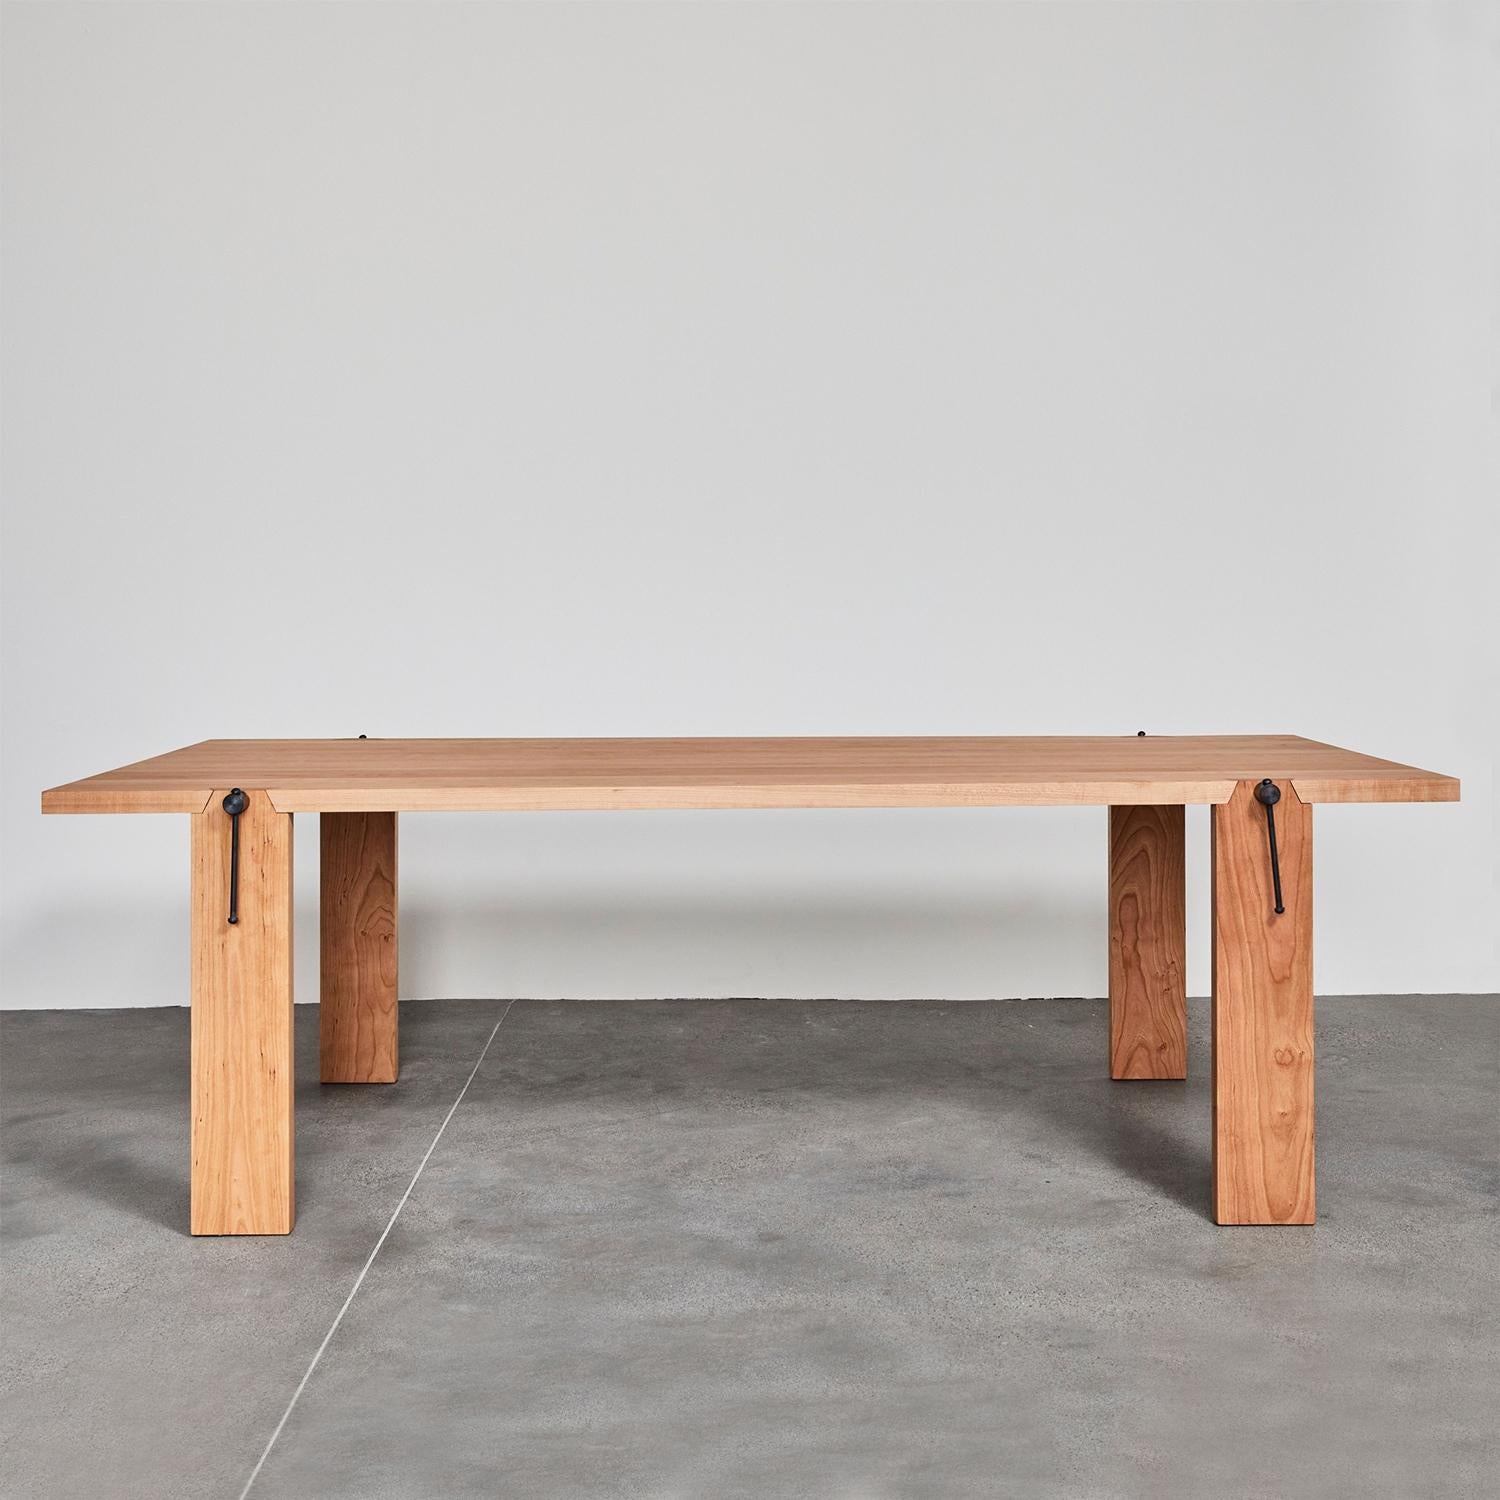 Table de salle à manger Carpenter Oak avec toute la structure en solide
bois de chêne, avec des listes collées dessus. 
Également disponible sur demande, en :
L200xP100xH75cm, prix : 10500,00€.
L220xD100xH75cm, prix :